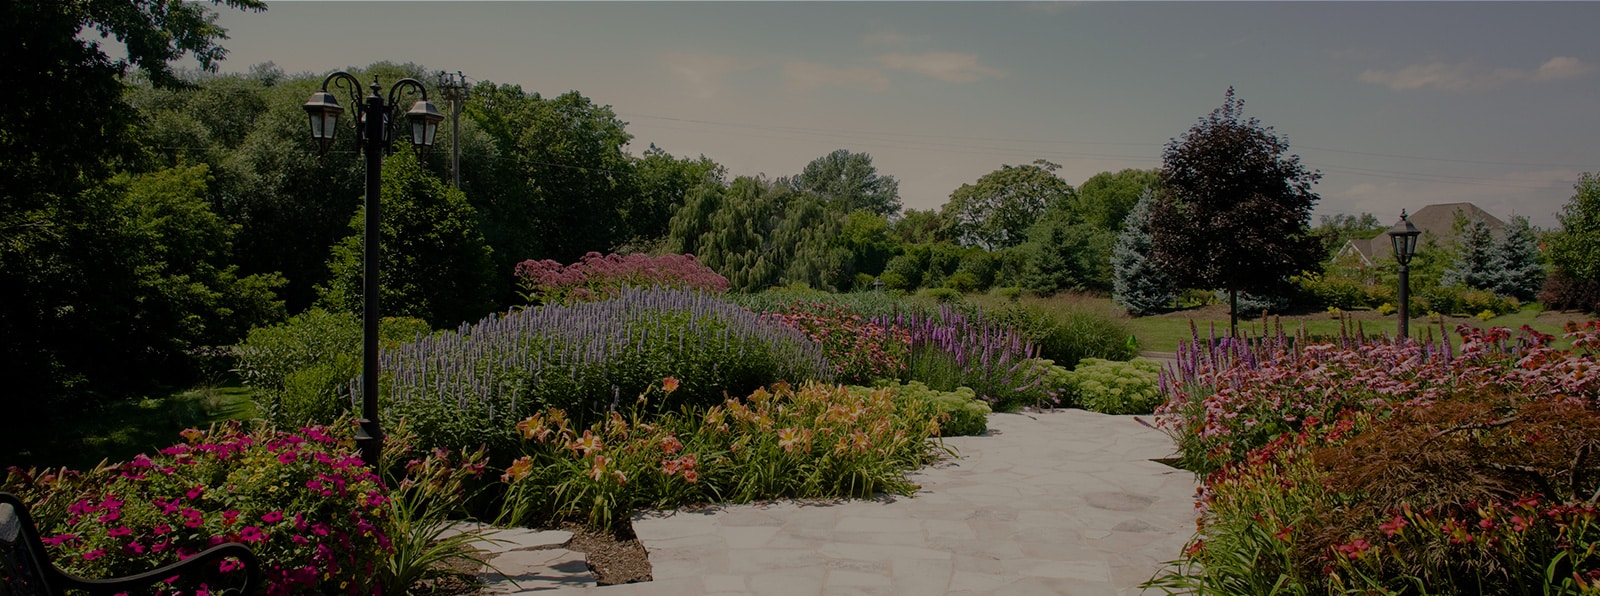 Garden design services in Hamilton